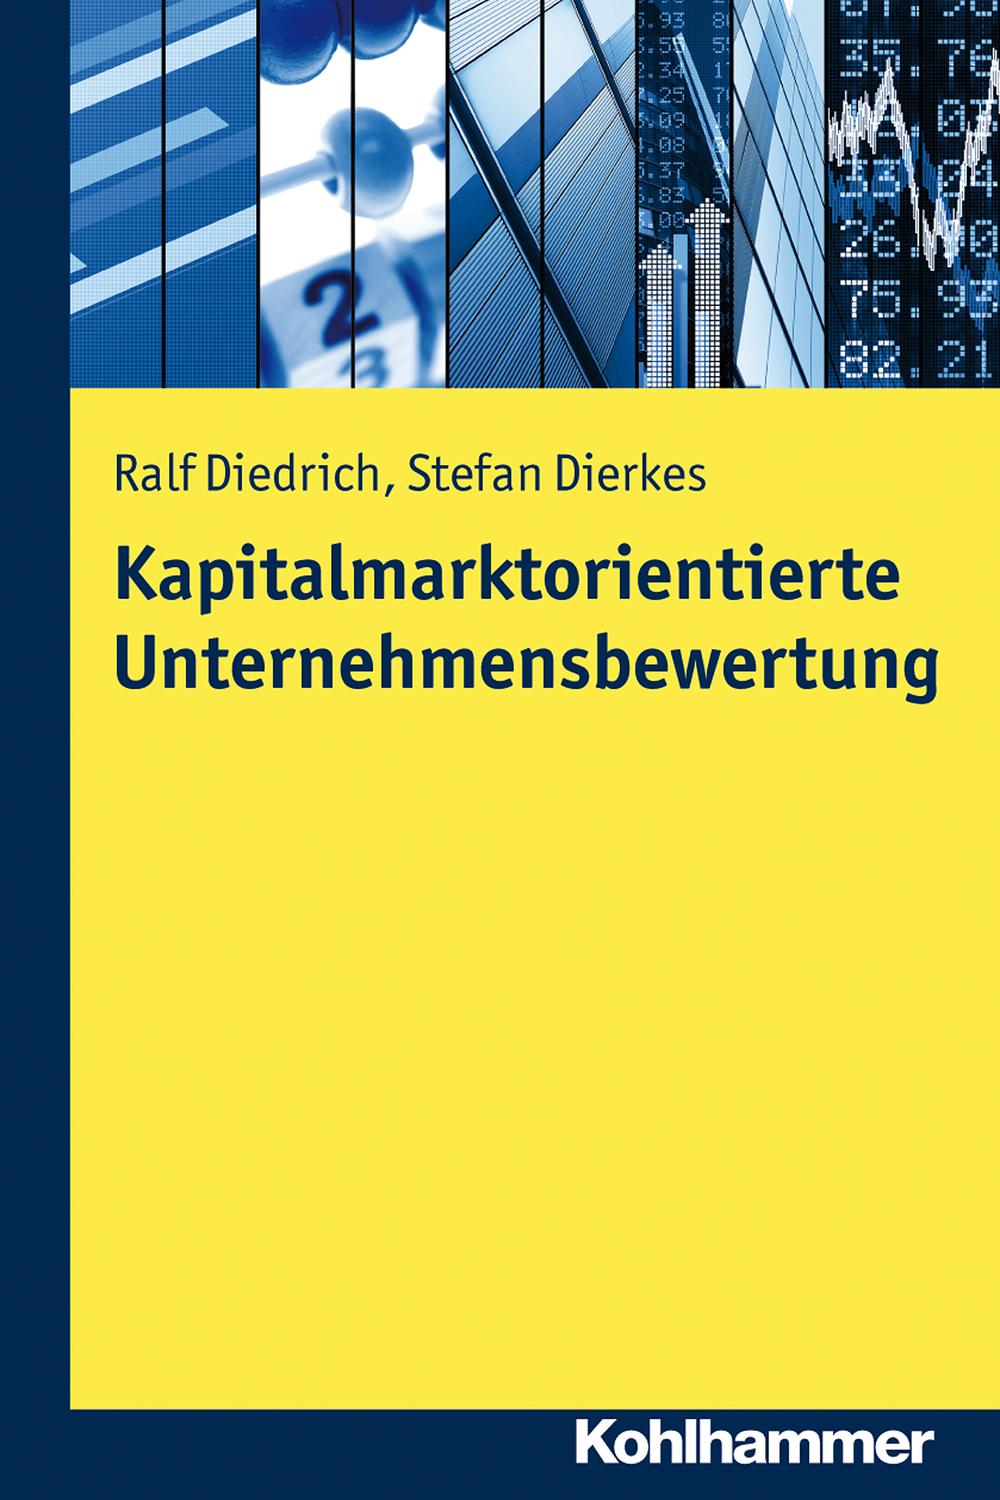 Kapitalmarktorientierte Unternehmensbewertung - Ralf Diedrich, Stefan Dierkes